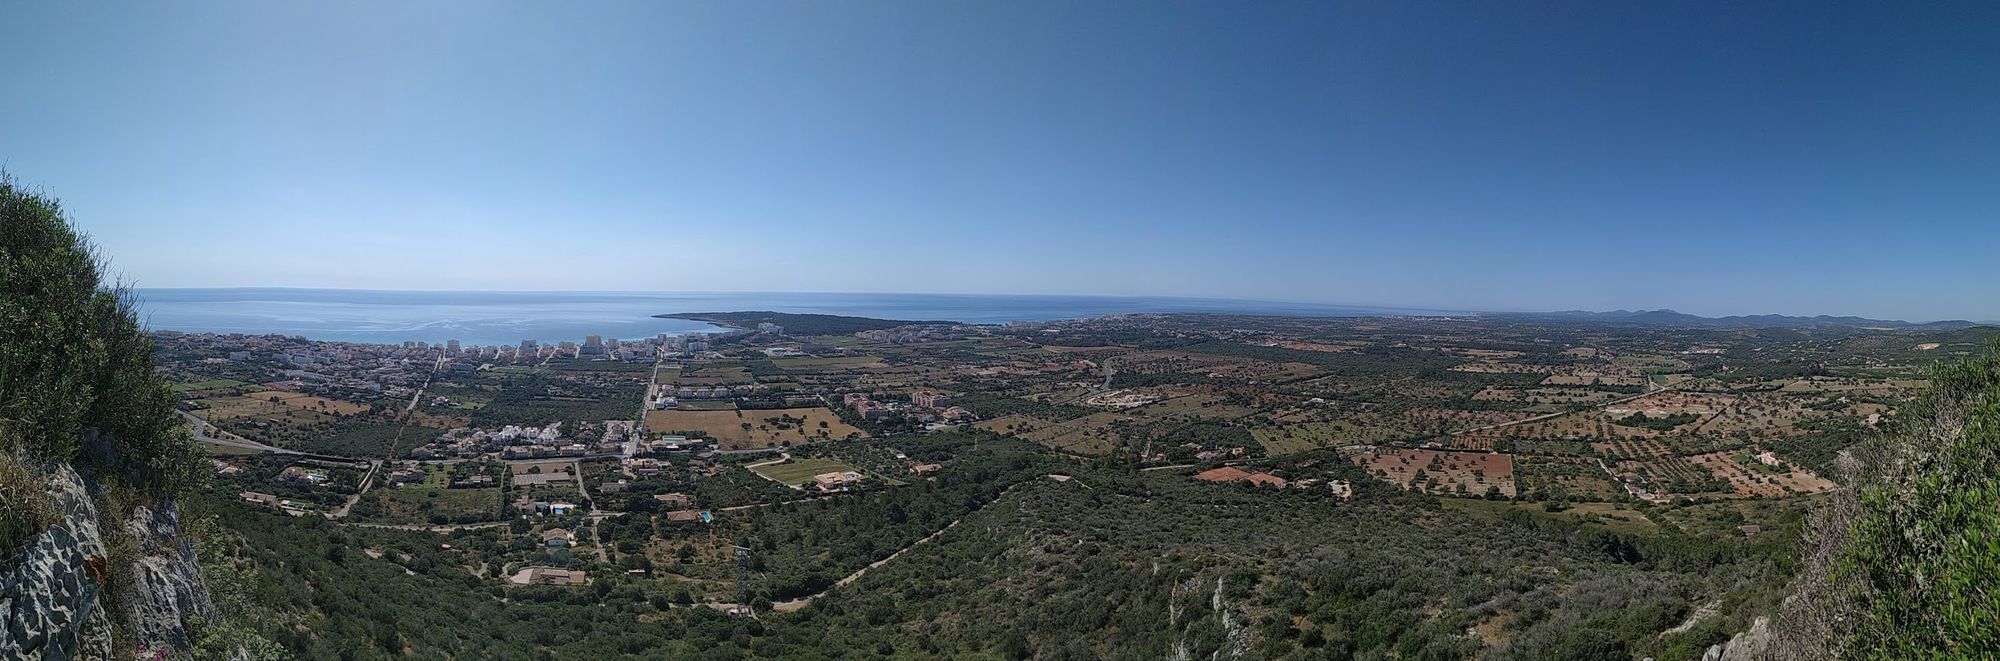 Rock Climbing Mallorca: Son Servera